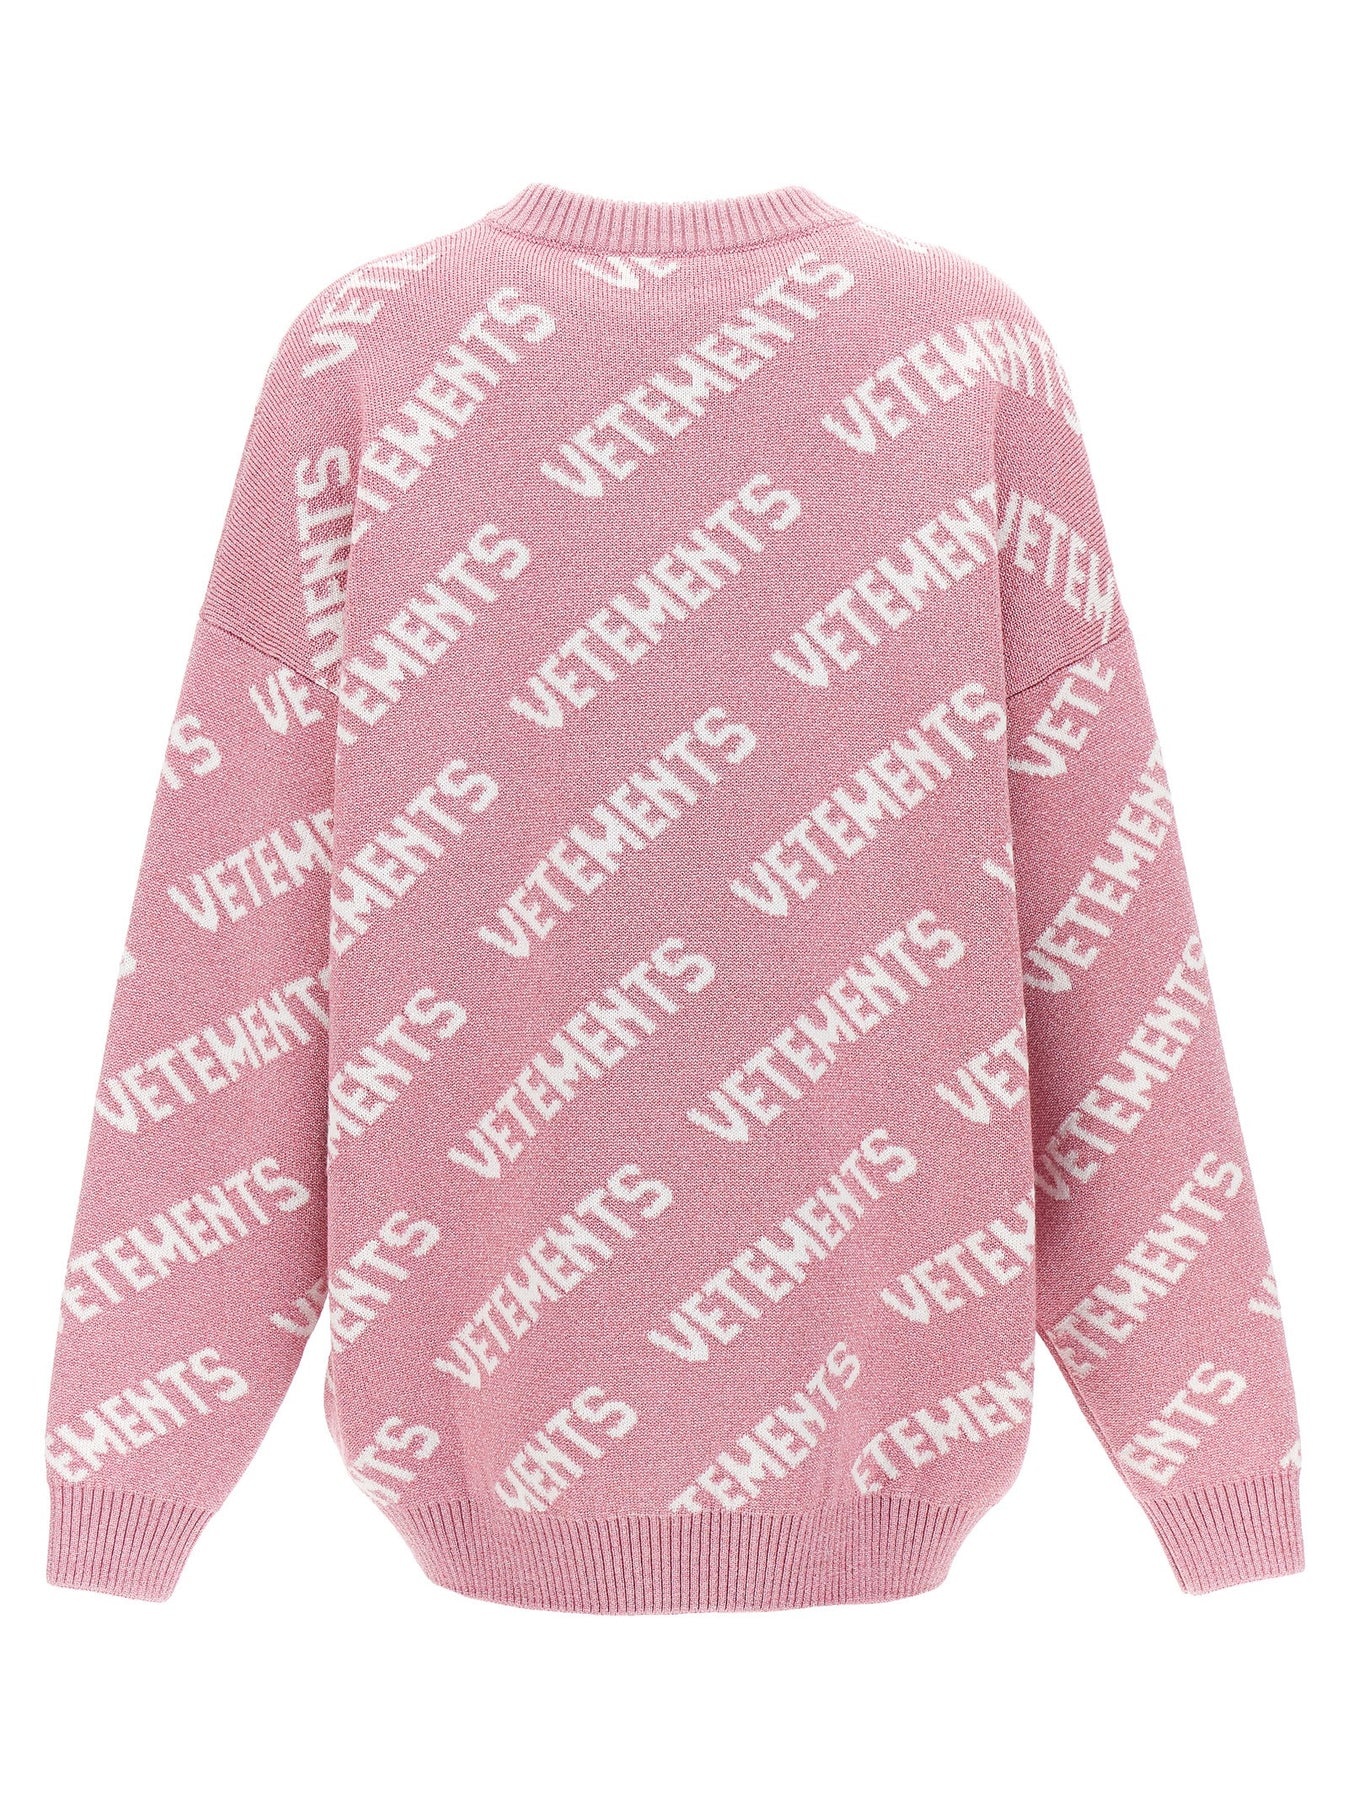 Lurex Monogram Sweater, Cardigans Pink - 2